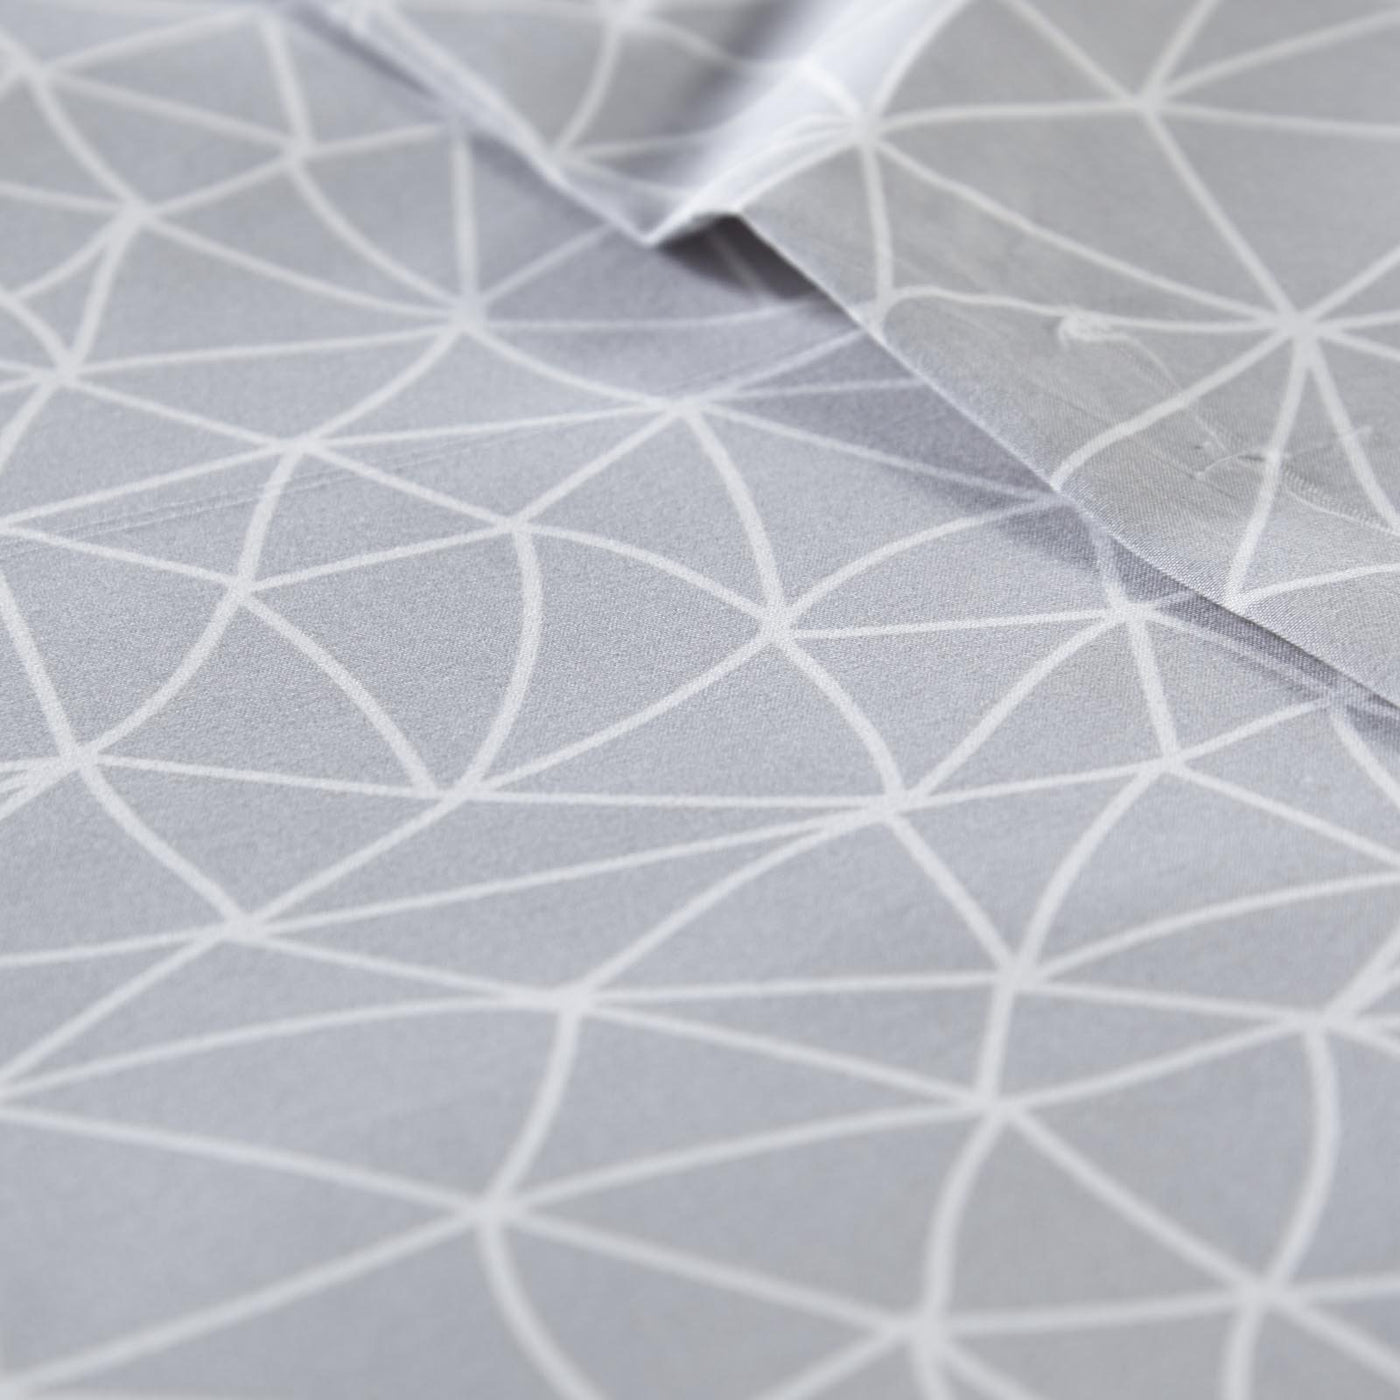 LaLa Land Printed Microfiber Sheet Set in Grey